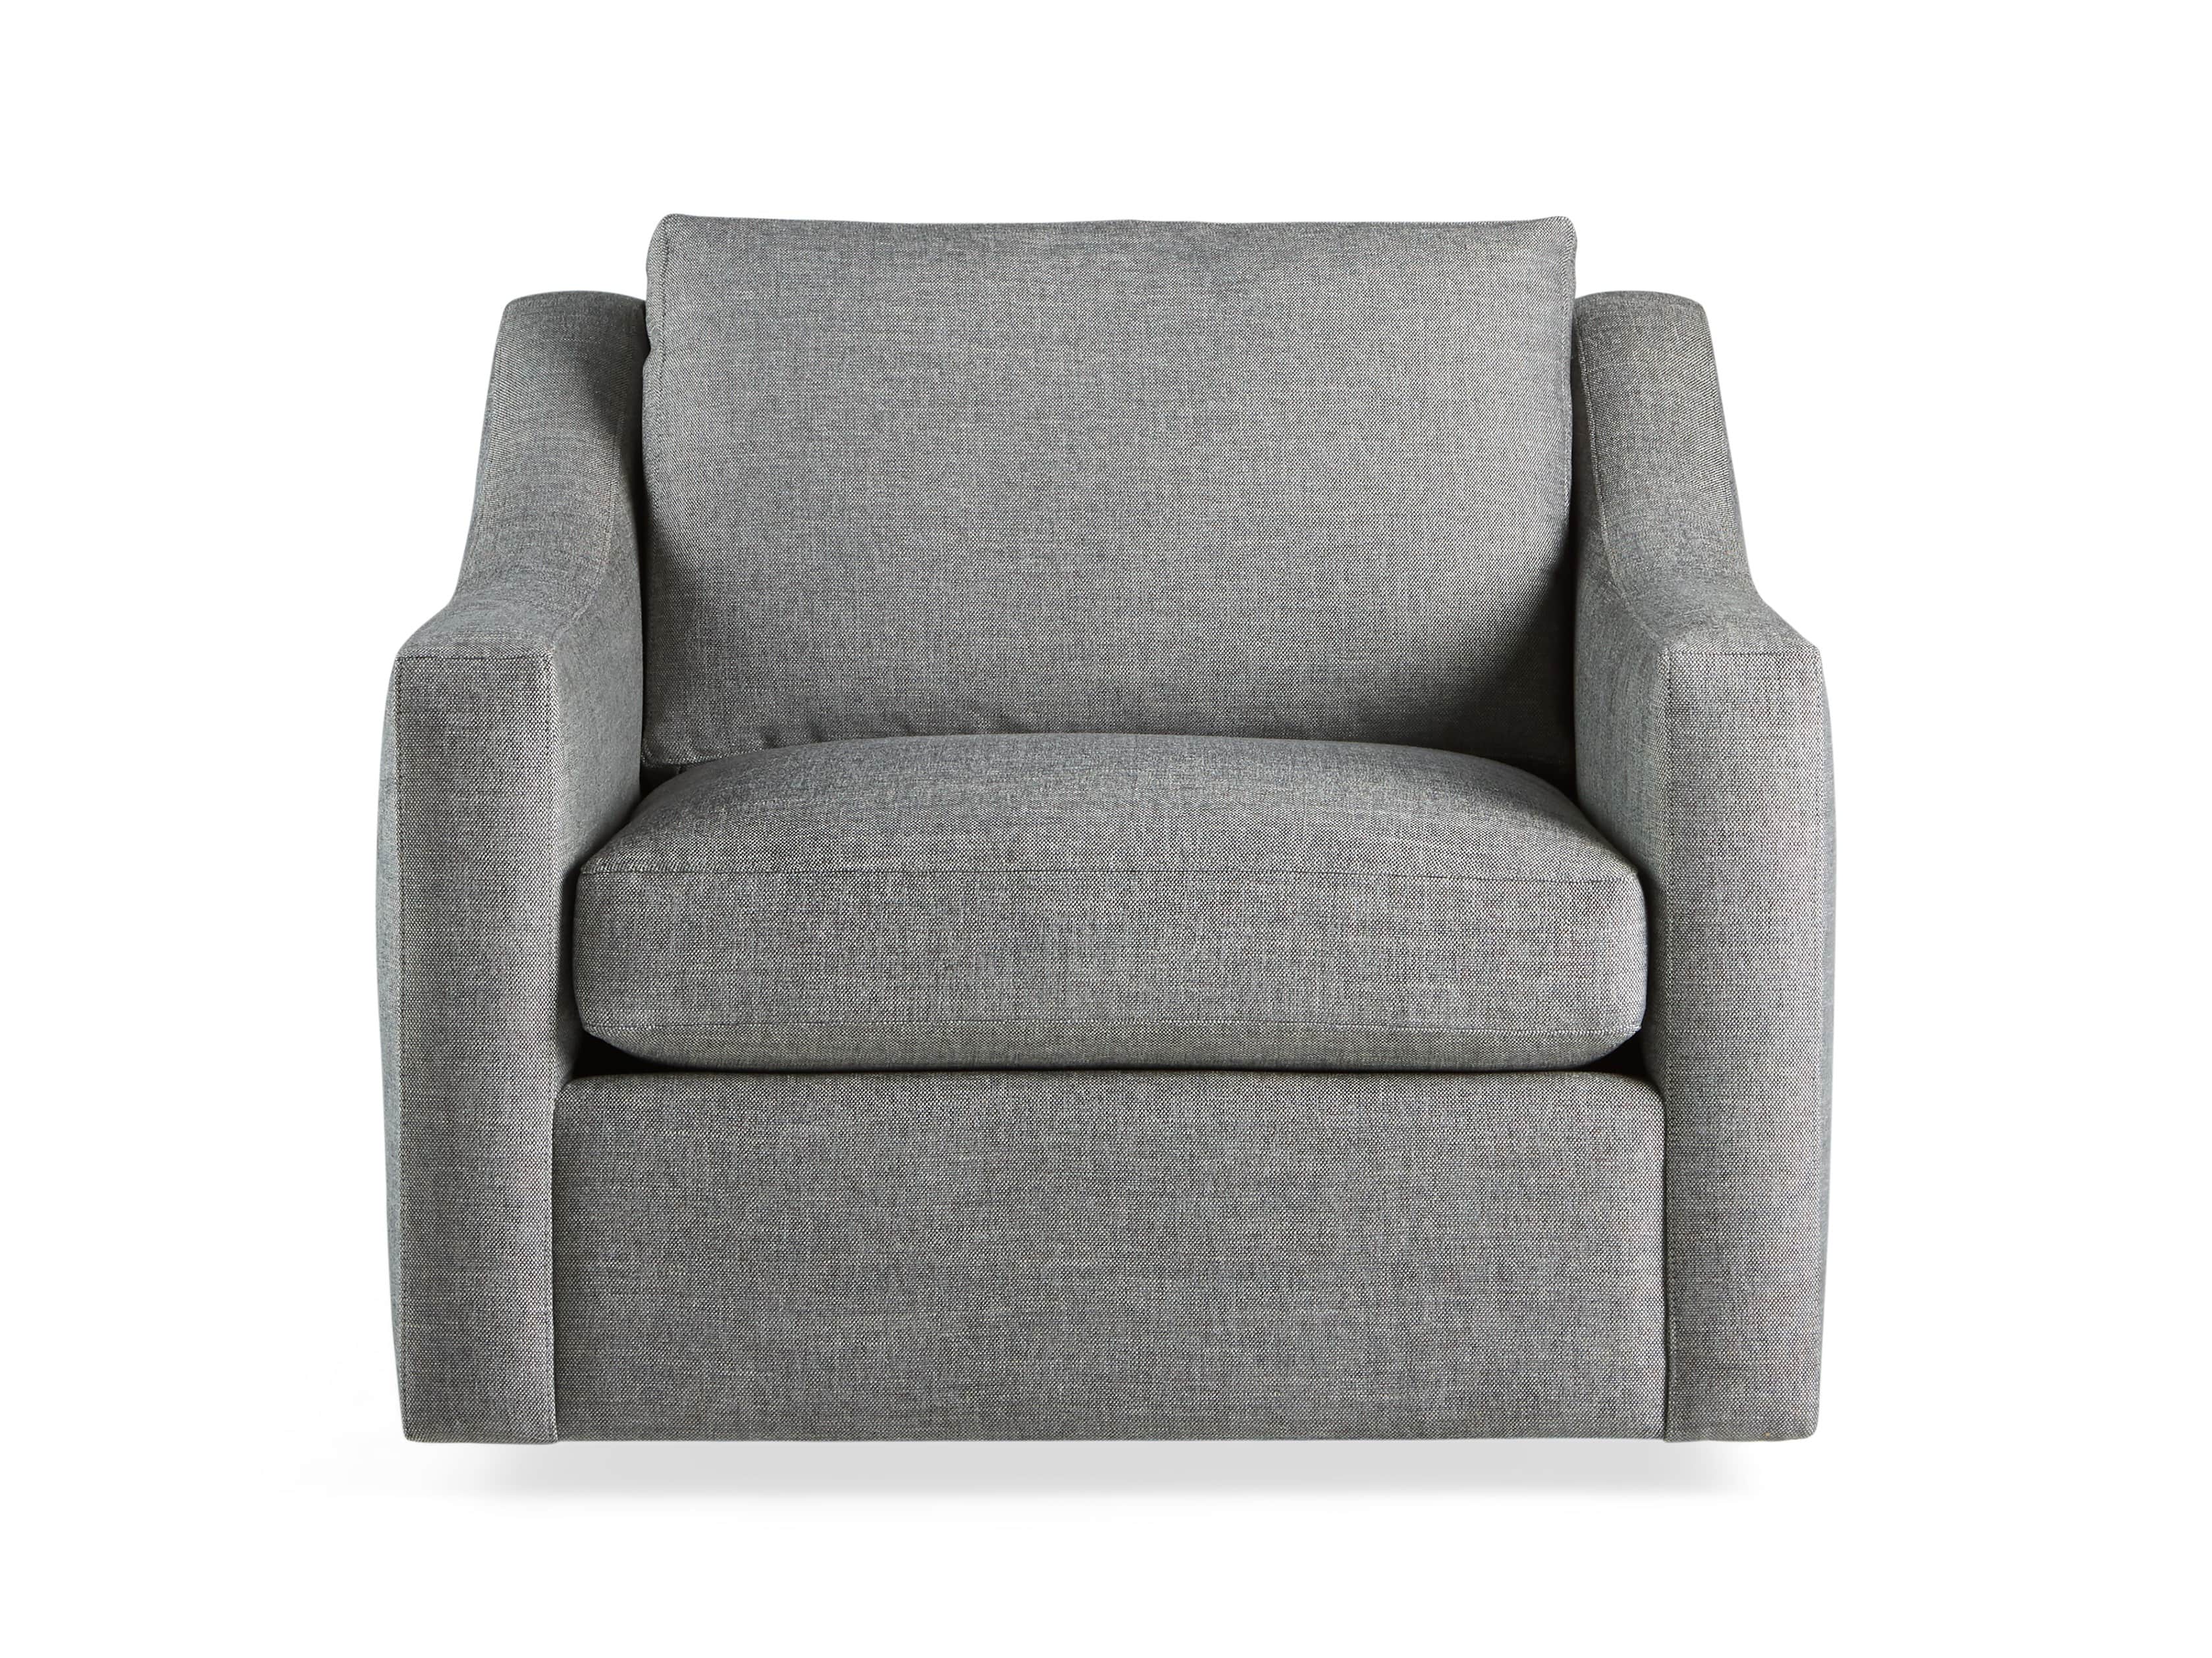 Ashby Chair | Arhaus Furniture